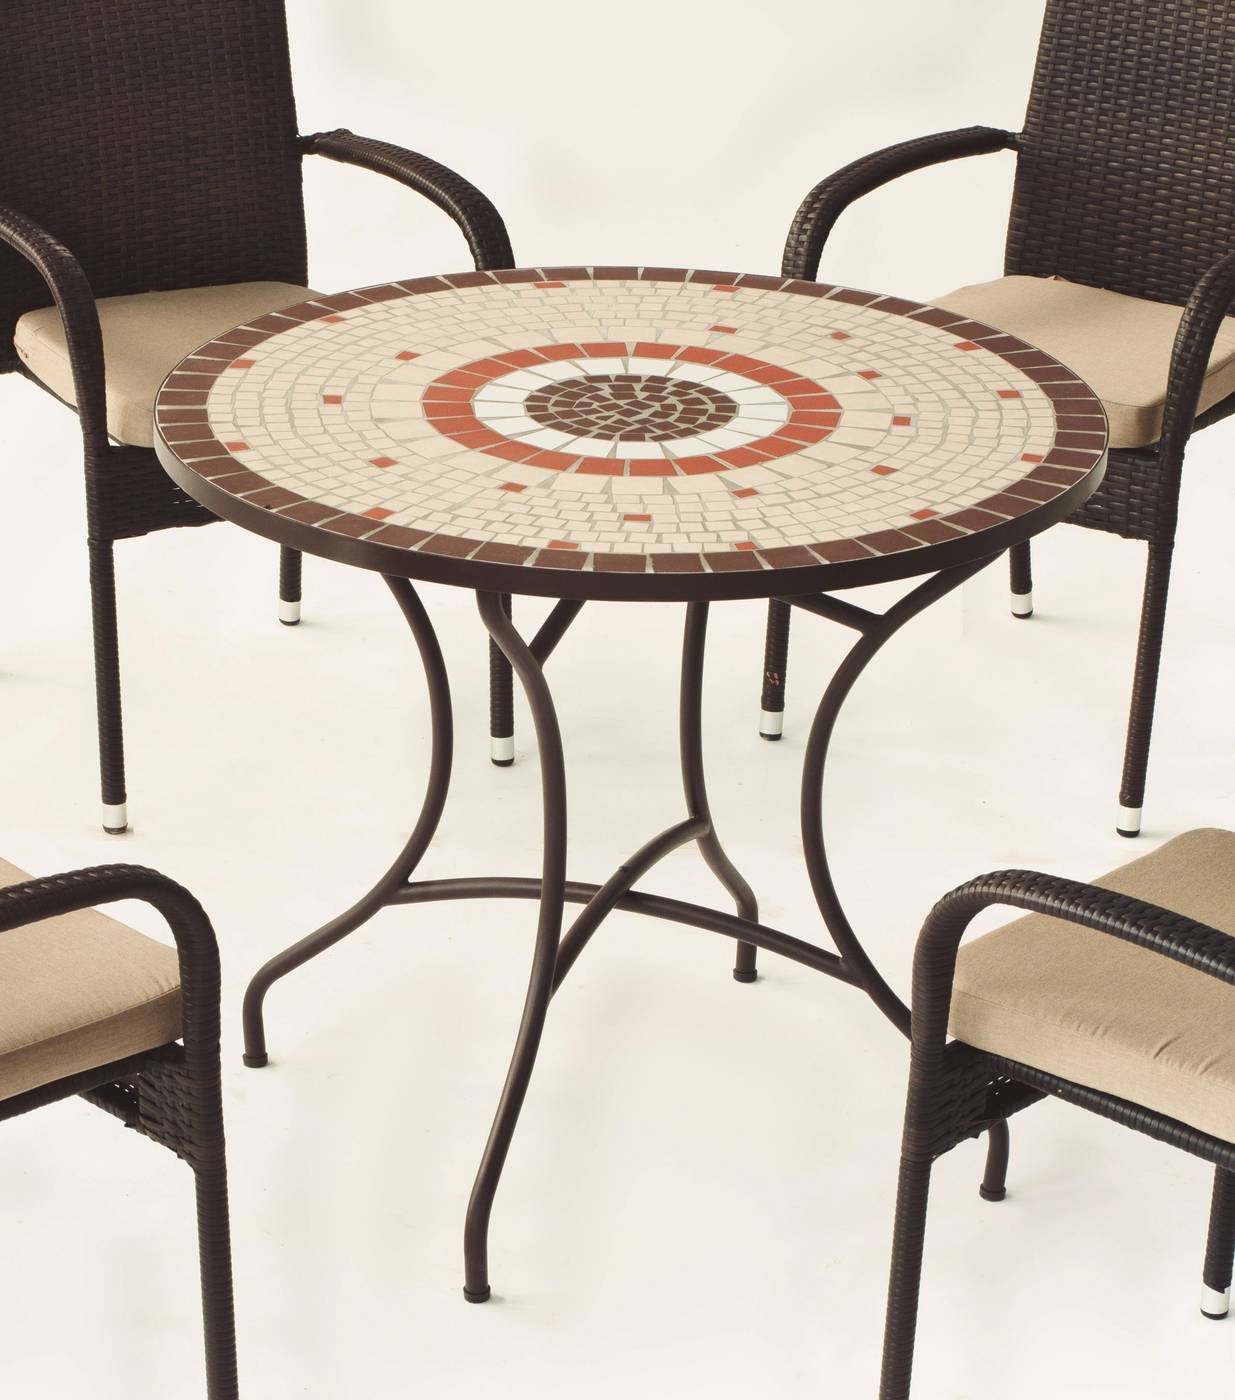 Conjunto Mosaico Malaya90-Bergamo - Conjunto de forja color marrón: mesa con tablero mosaico de 90 cm + 4 sillones de ratán sintético con cojines.